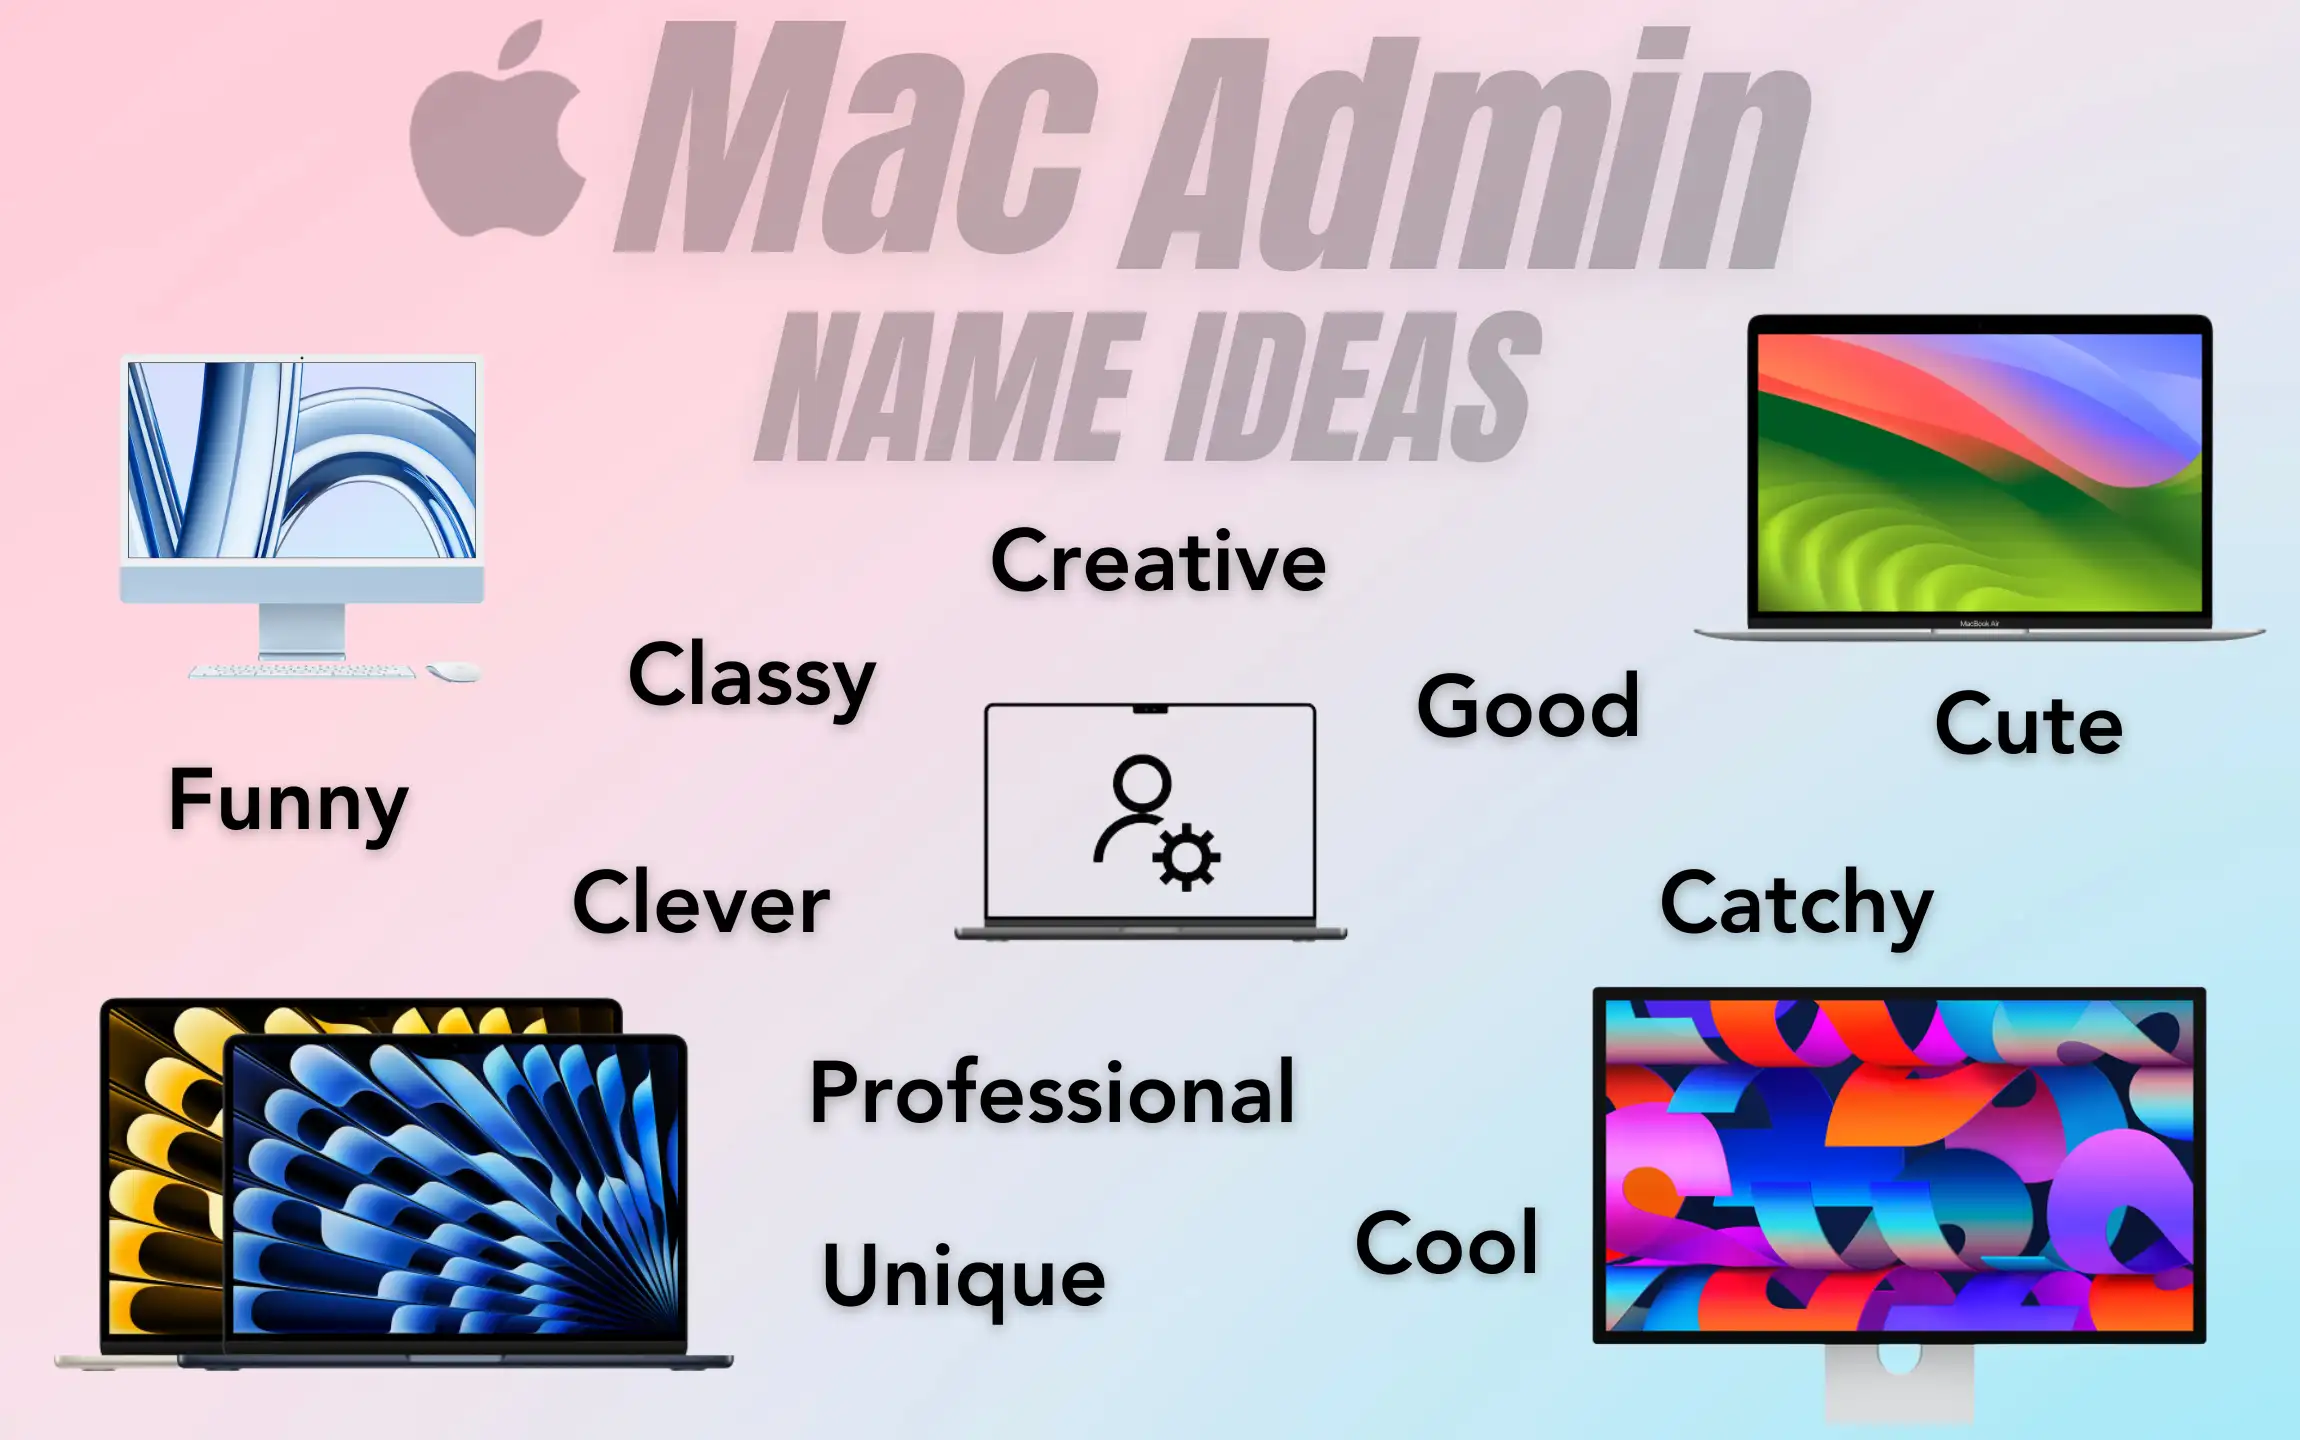 Mac Admin Name Ideas